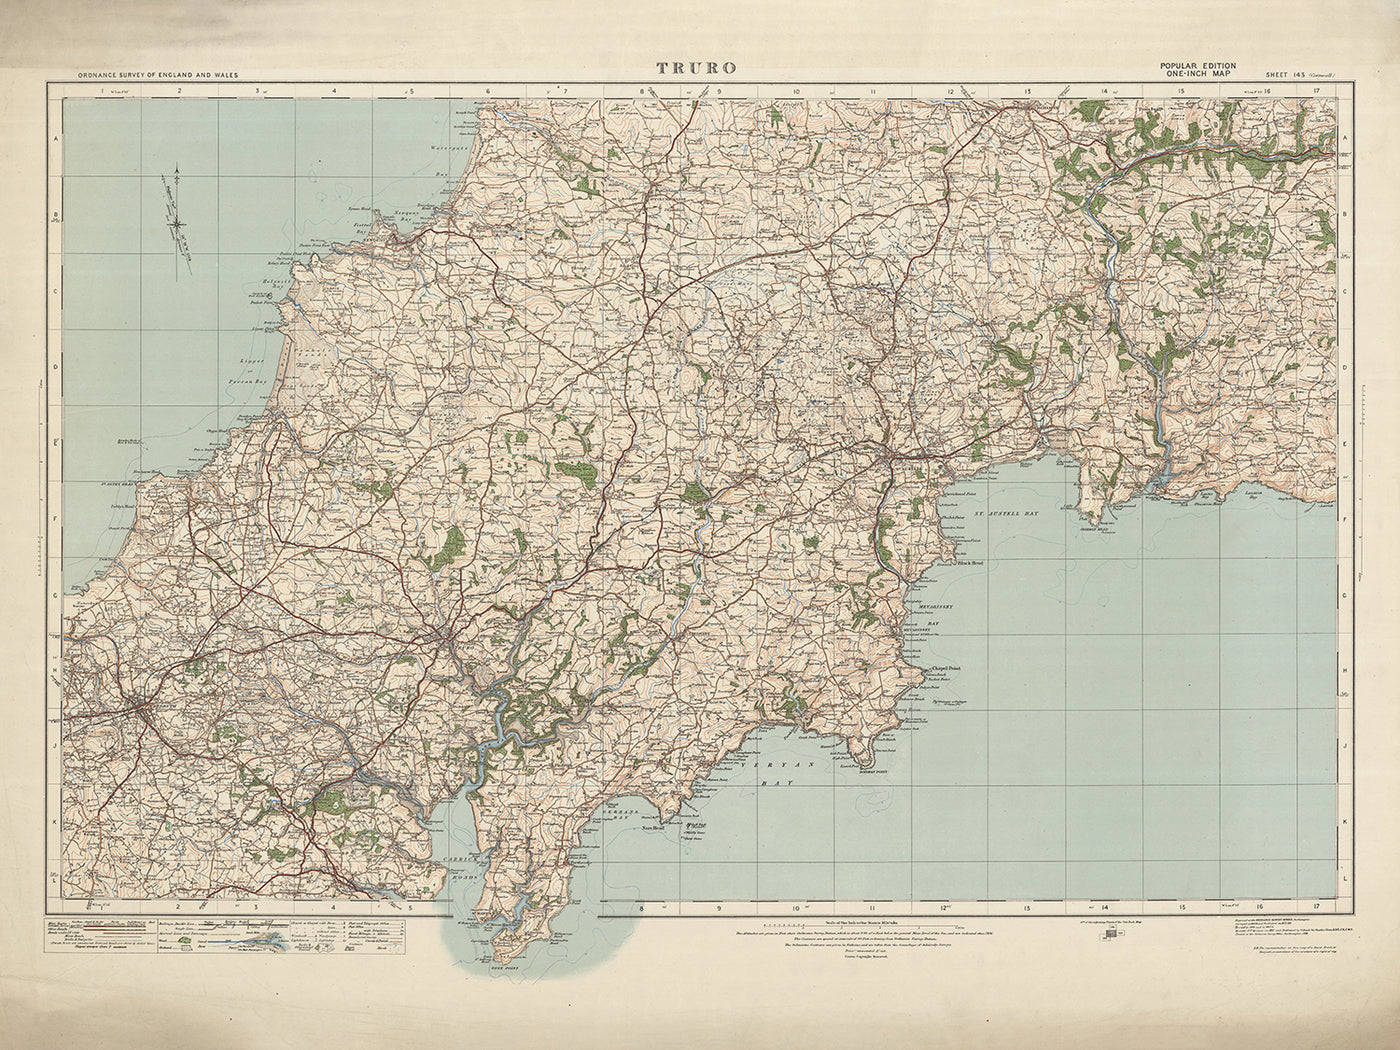 Alte Ordnance Survey Karte, Blatt 143 - Truro, 1919-1926: Newquay, St Austell, Roche, Bodmin, Fluss Fal, Carn Brea Hill und Goss Moor